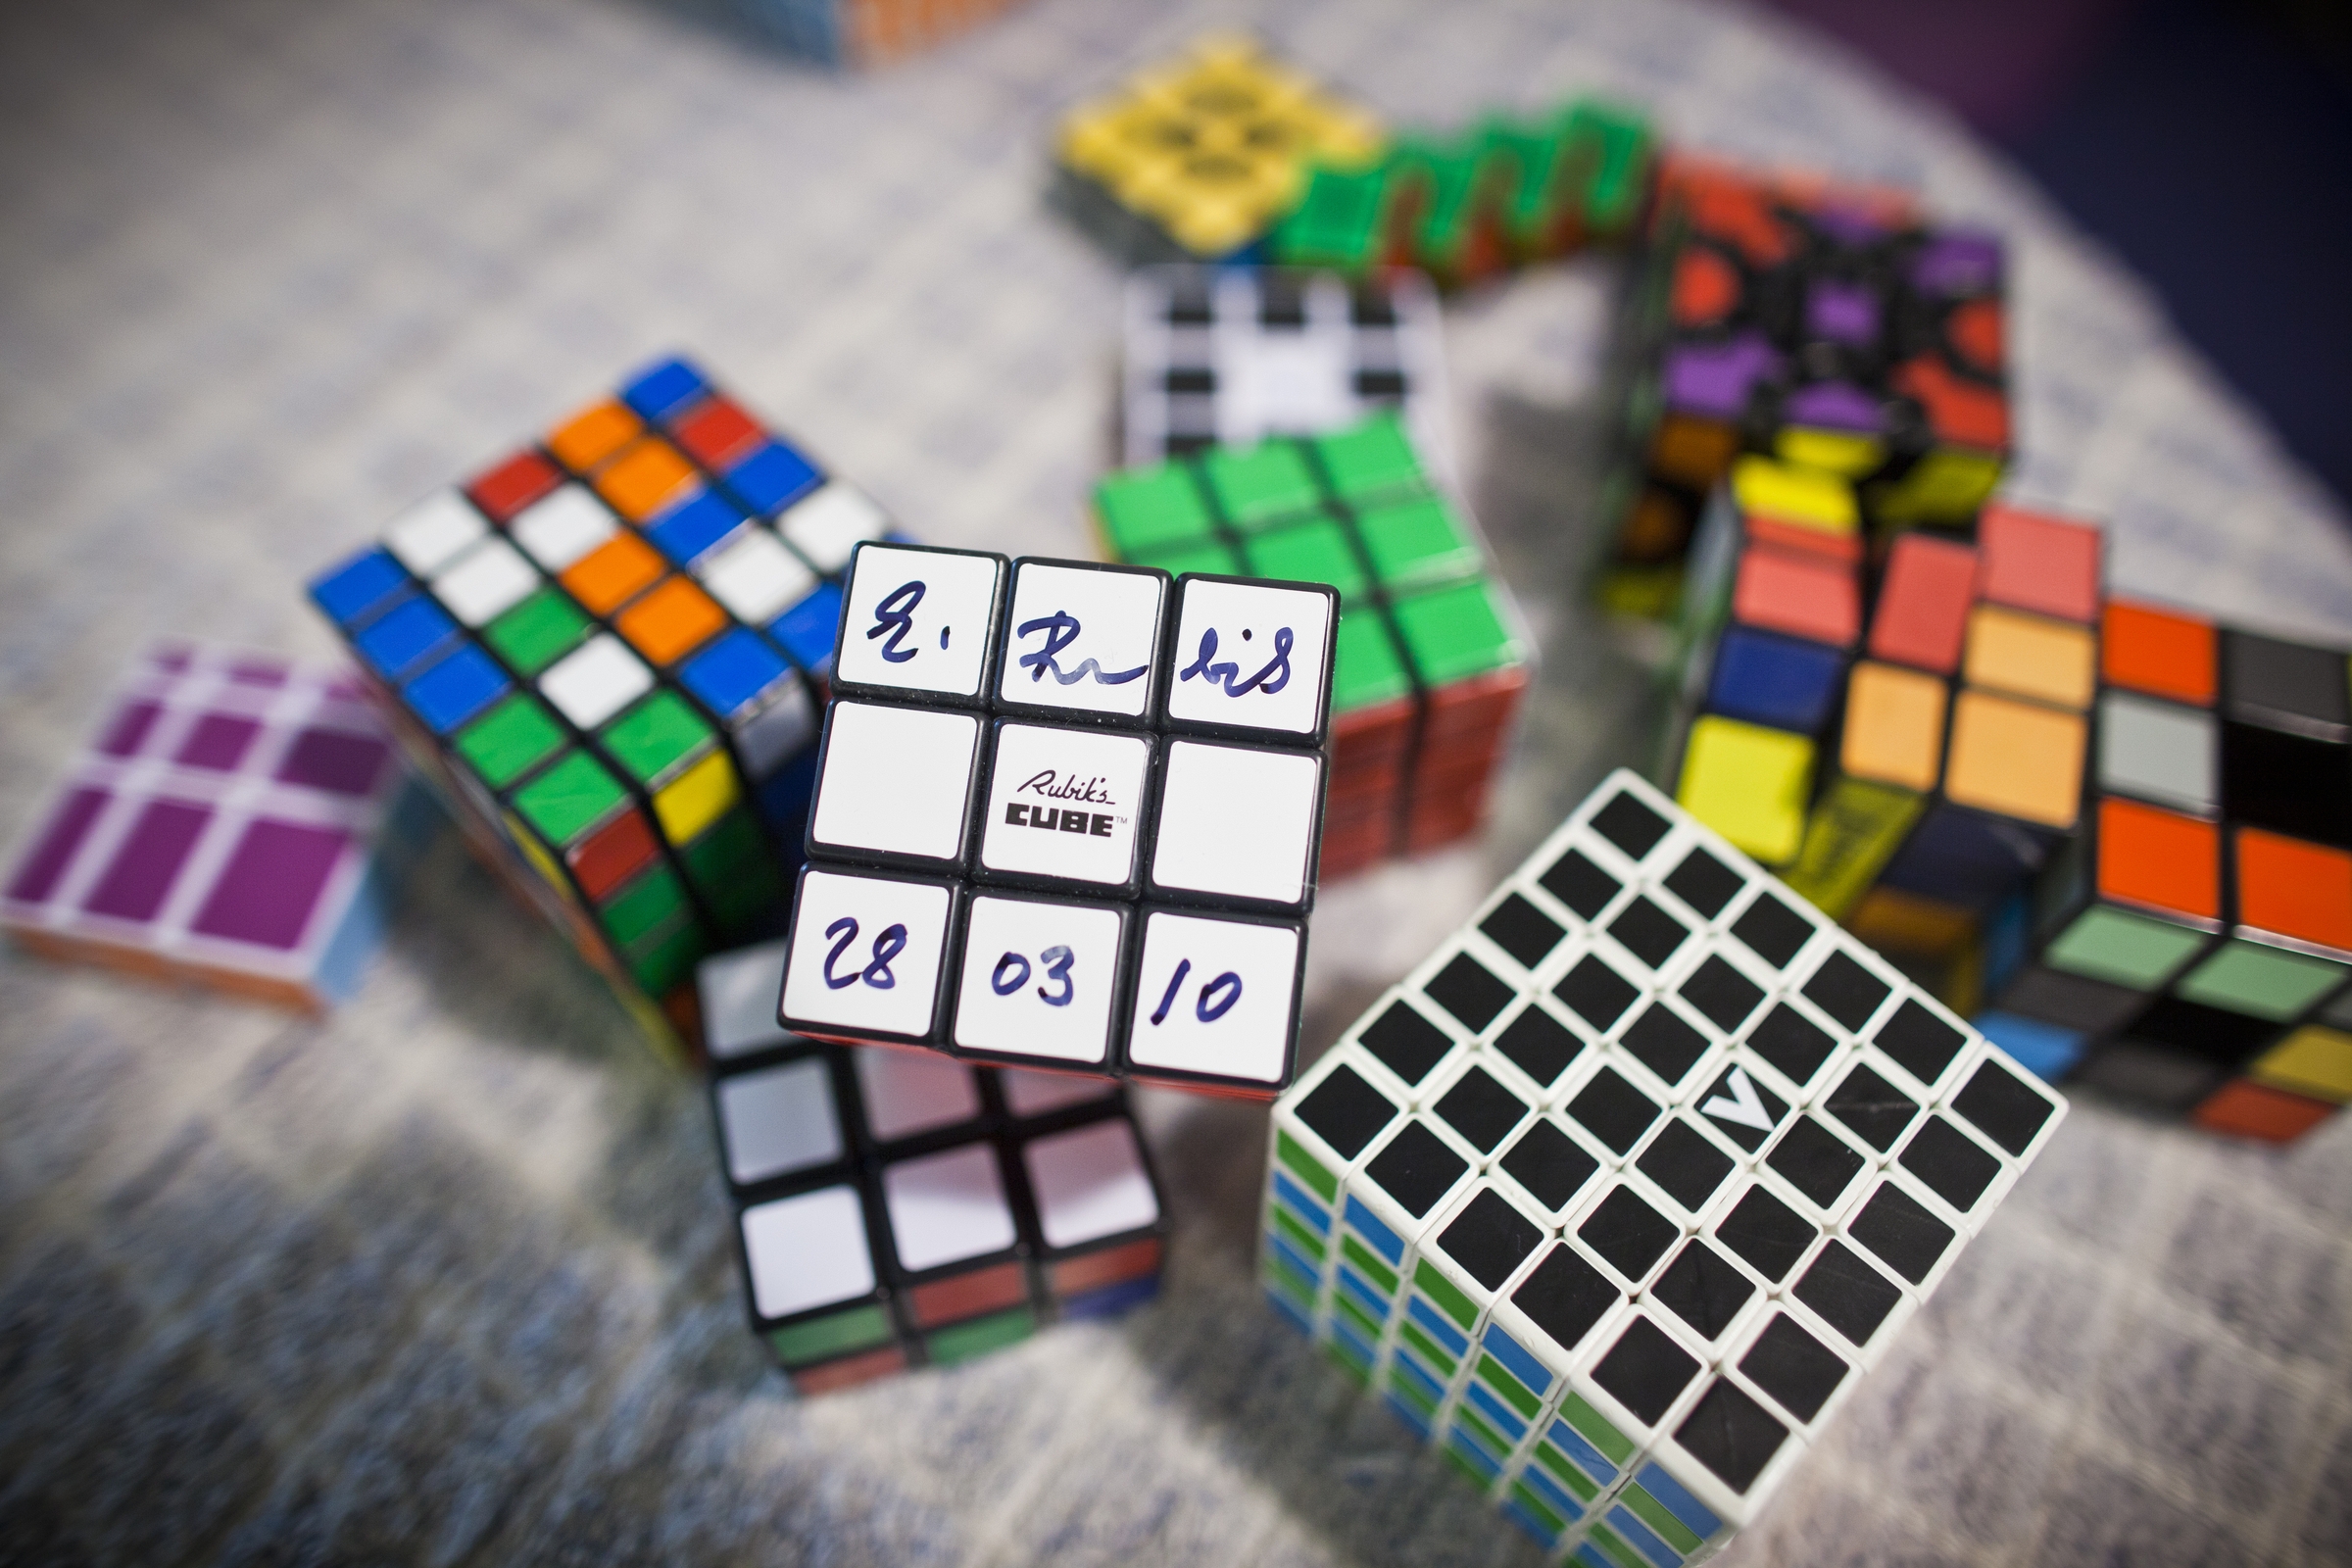 Игры головоломки много много много. Кьюб кубик Рубика. Кубик Рубика 15 на 15. Кубик рубик 20 на 20. Разные кубики рубики.